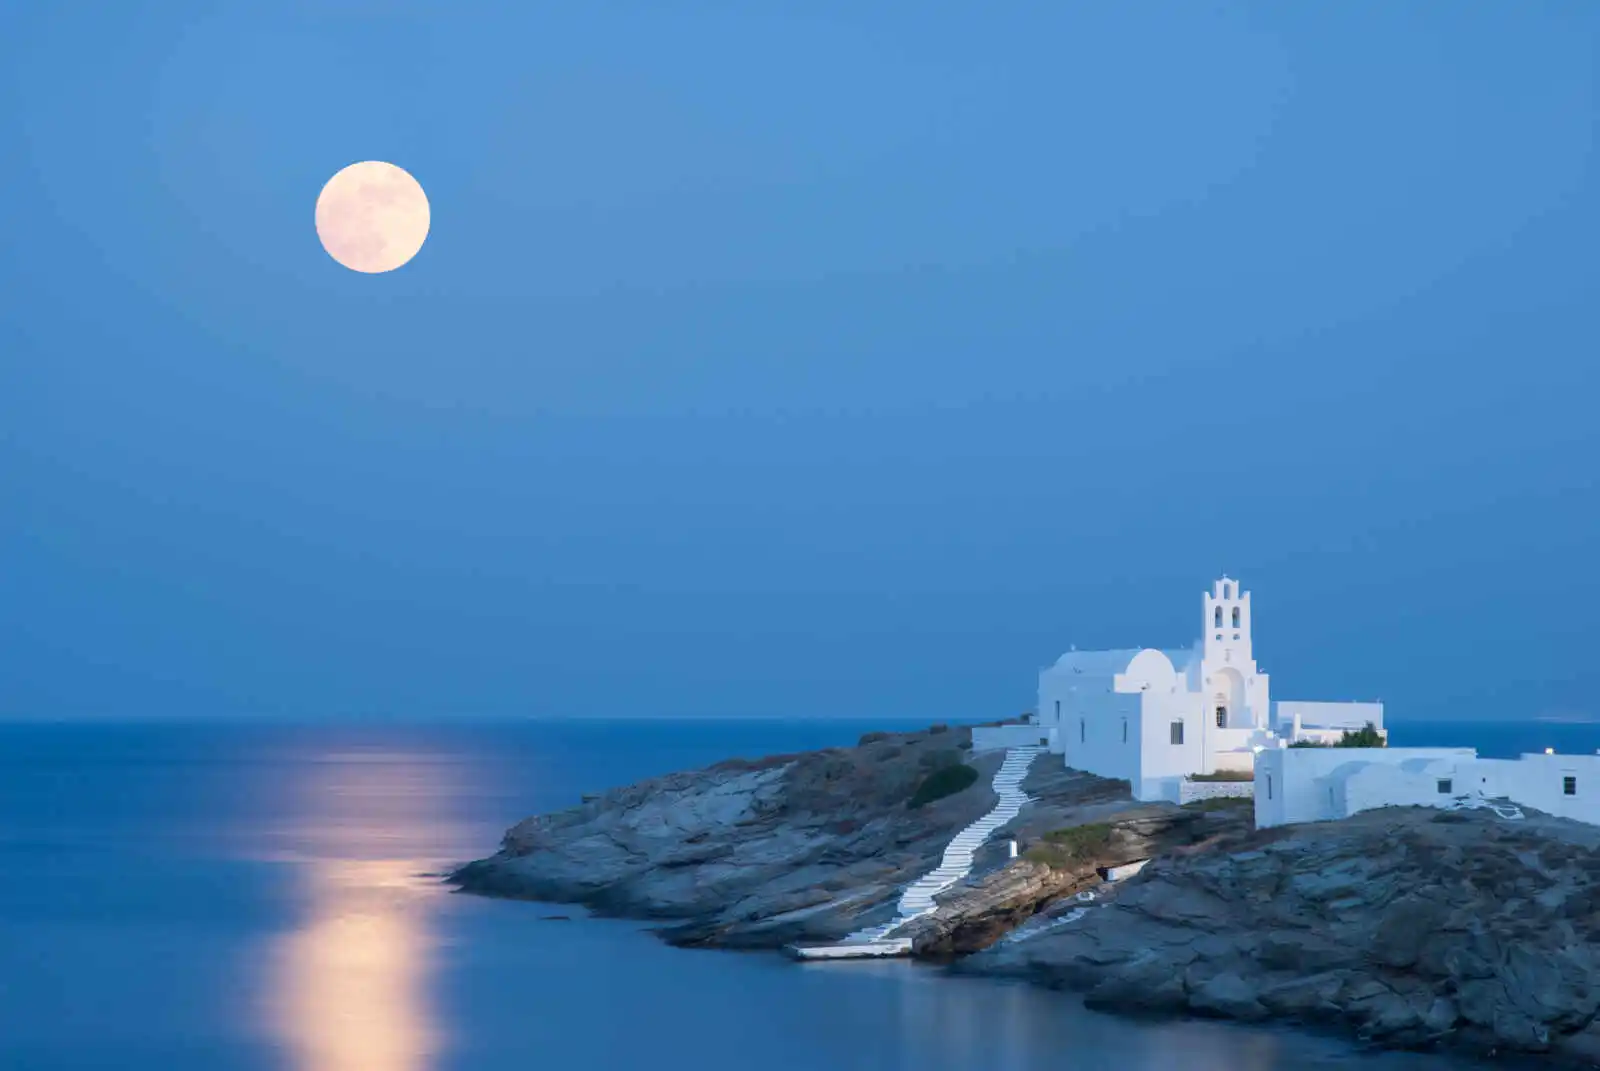 Grèce - Iles grecques - Les Cyclades - Mykonos - Paros - Sifnos - Combiné Cyclades : Mykonos, Sifnos et Paros